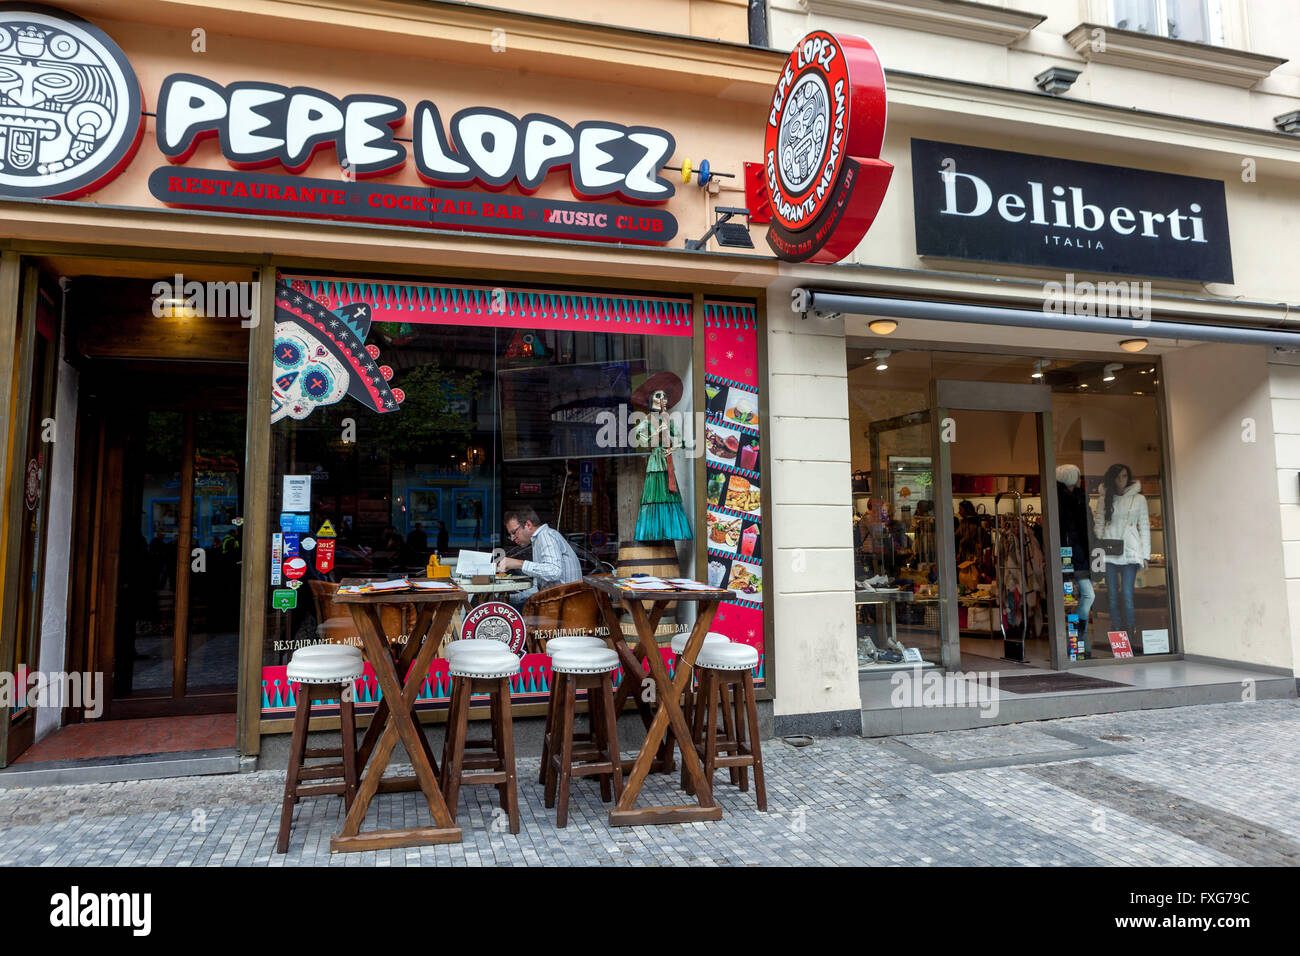 Ristorante Pepe Lopez e Deliberti negozio di moda, strada di Na Prikope, Praga, Repubblica Ceca Foto Stock